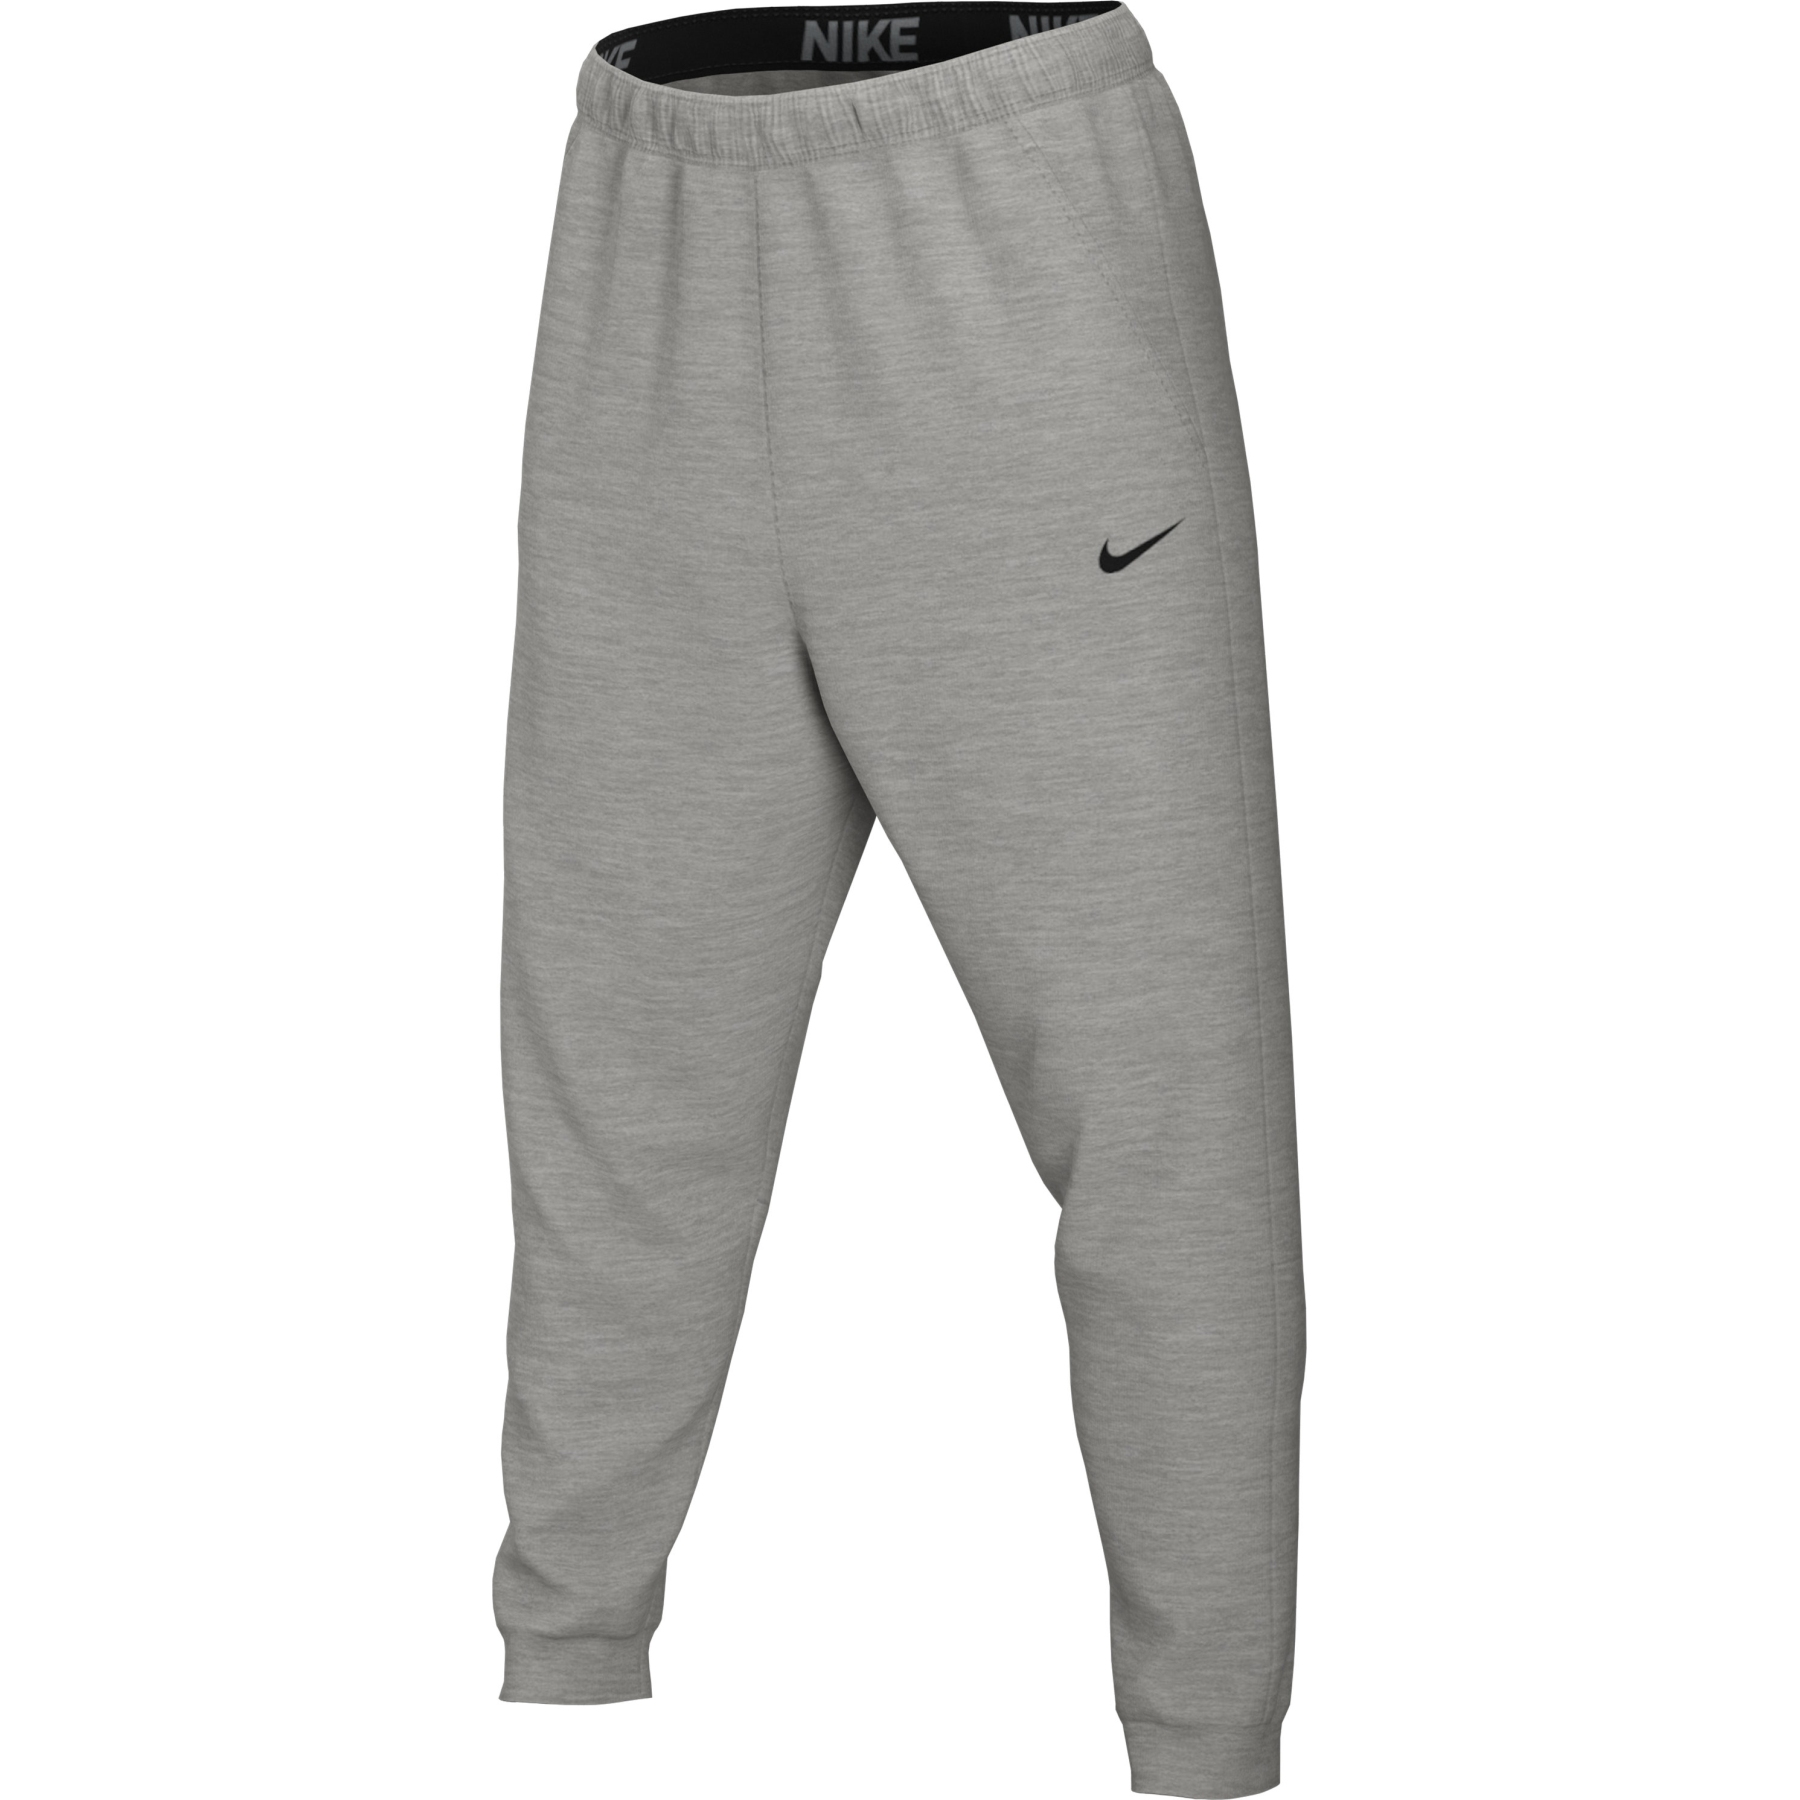 Foto de Nike Pantalón de Entrenamiento Hombre - Dry Tapered - dark grey heather/black CZ6379-063